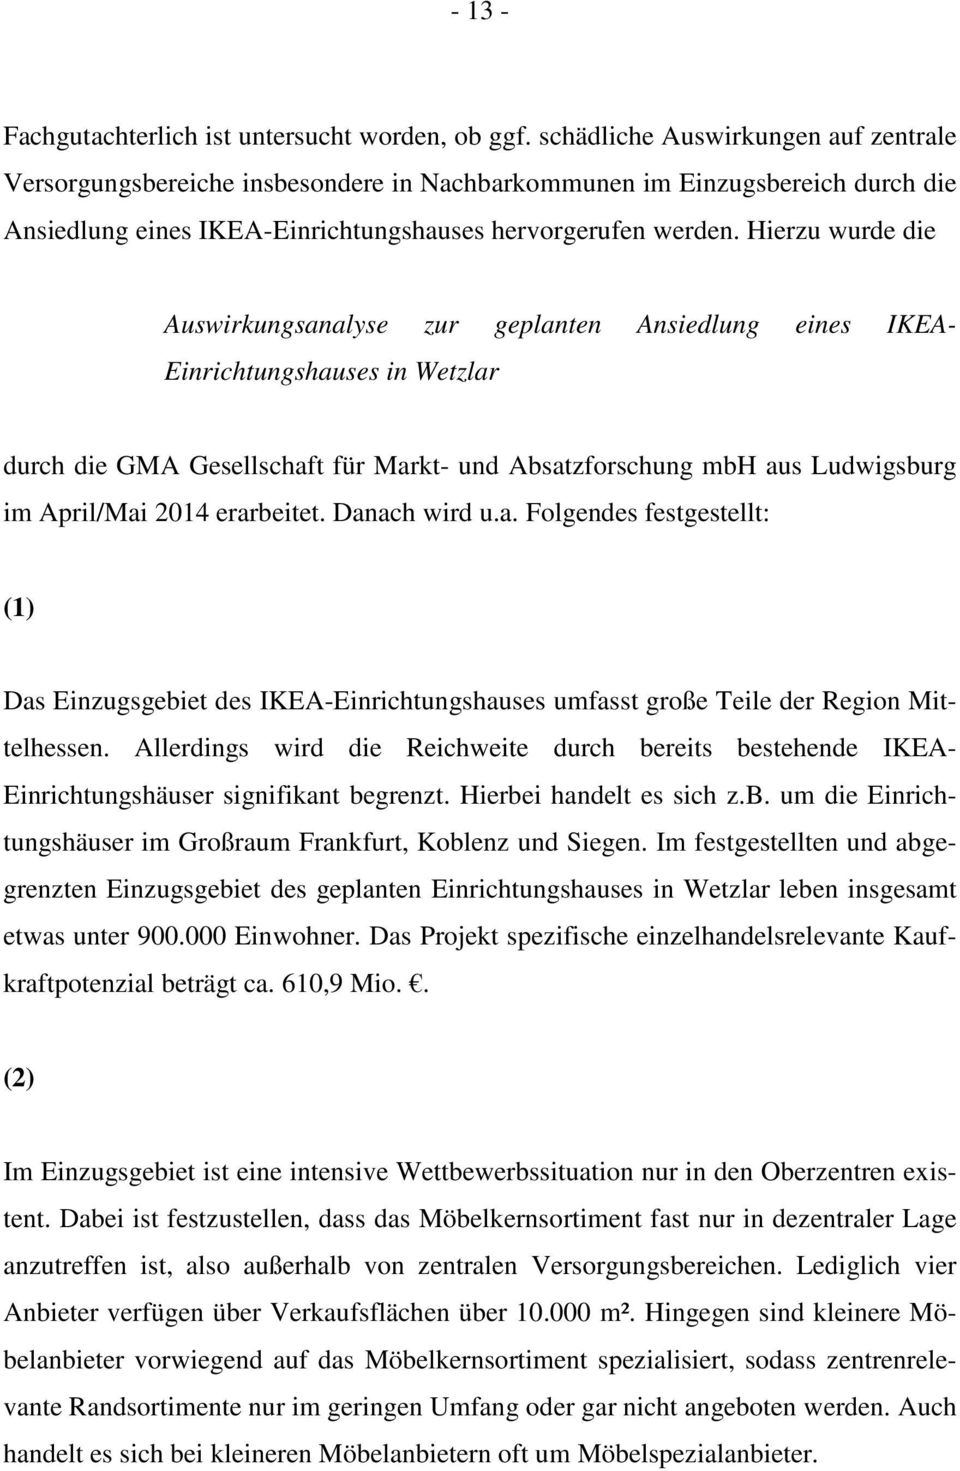 Hierzu wurde die Auswirkungsanalyse zur geplanten Ansiedlung eines IKEA- Einrichtungshauses in Wetzlar durch die GMA Gesellschaft für Markt- und Absatzforschung mbh aus Ludwigsburg im April/Mai 2014